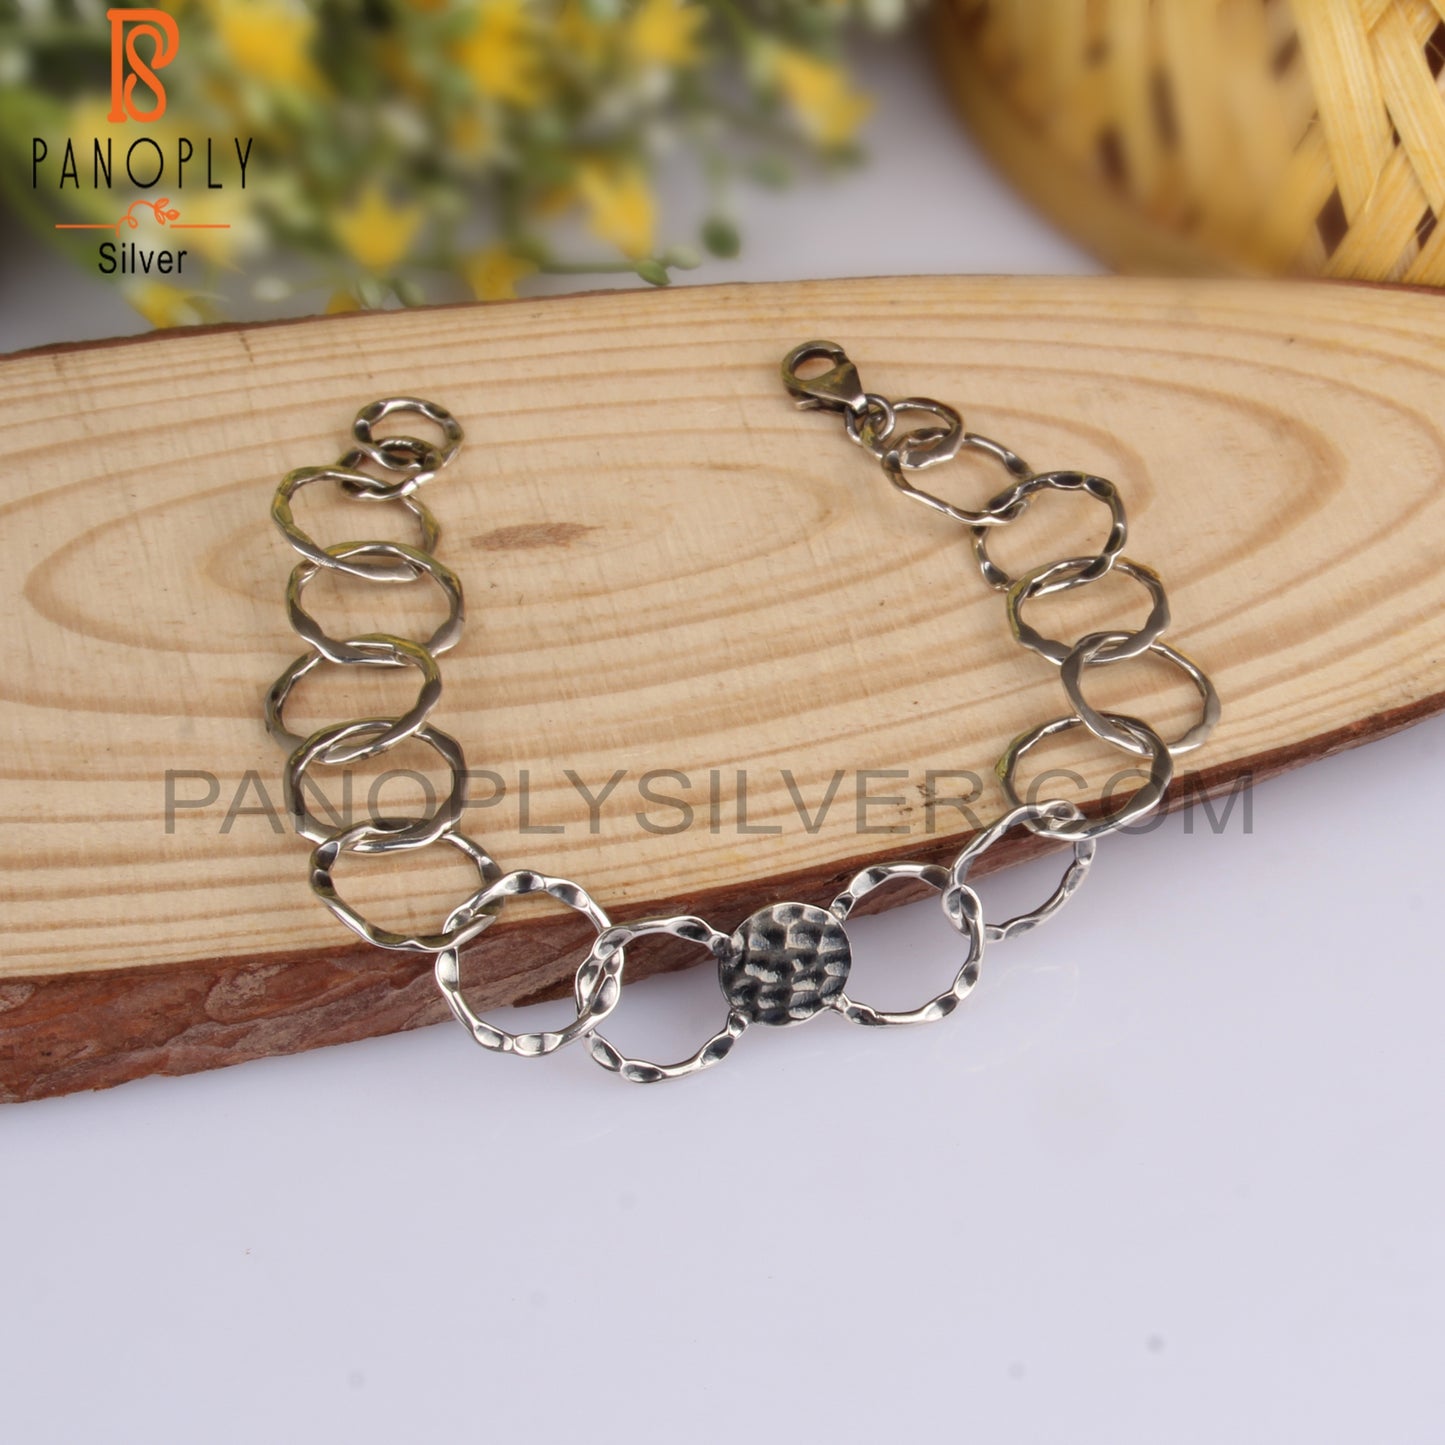 Geometric 925 Sterling Silver Chain Bracelet